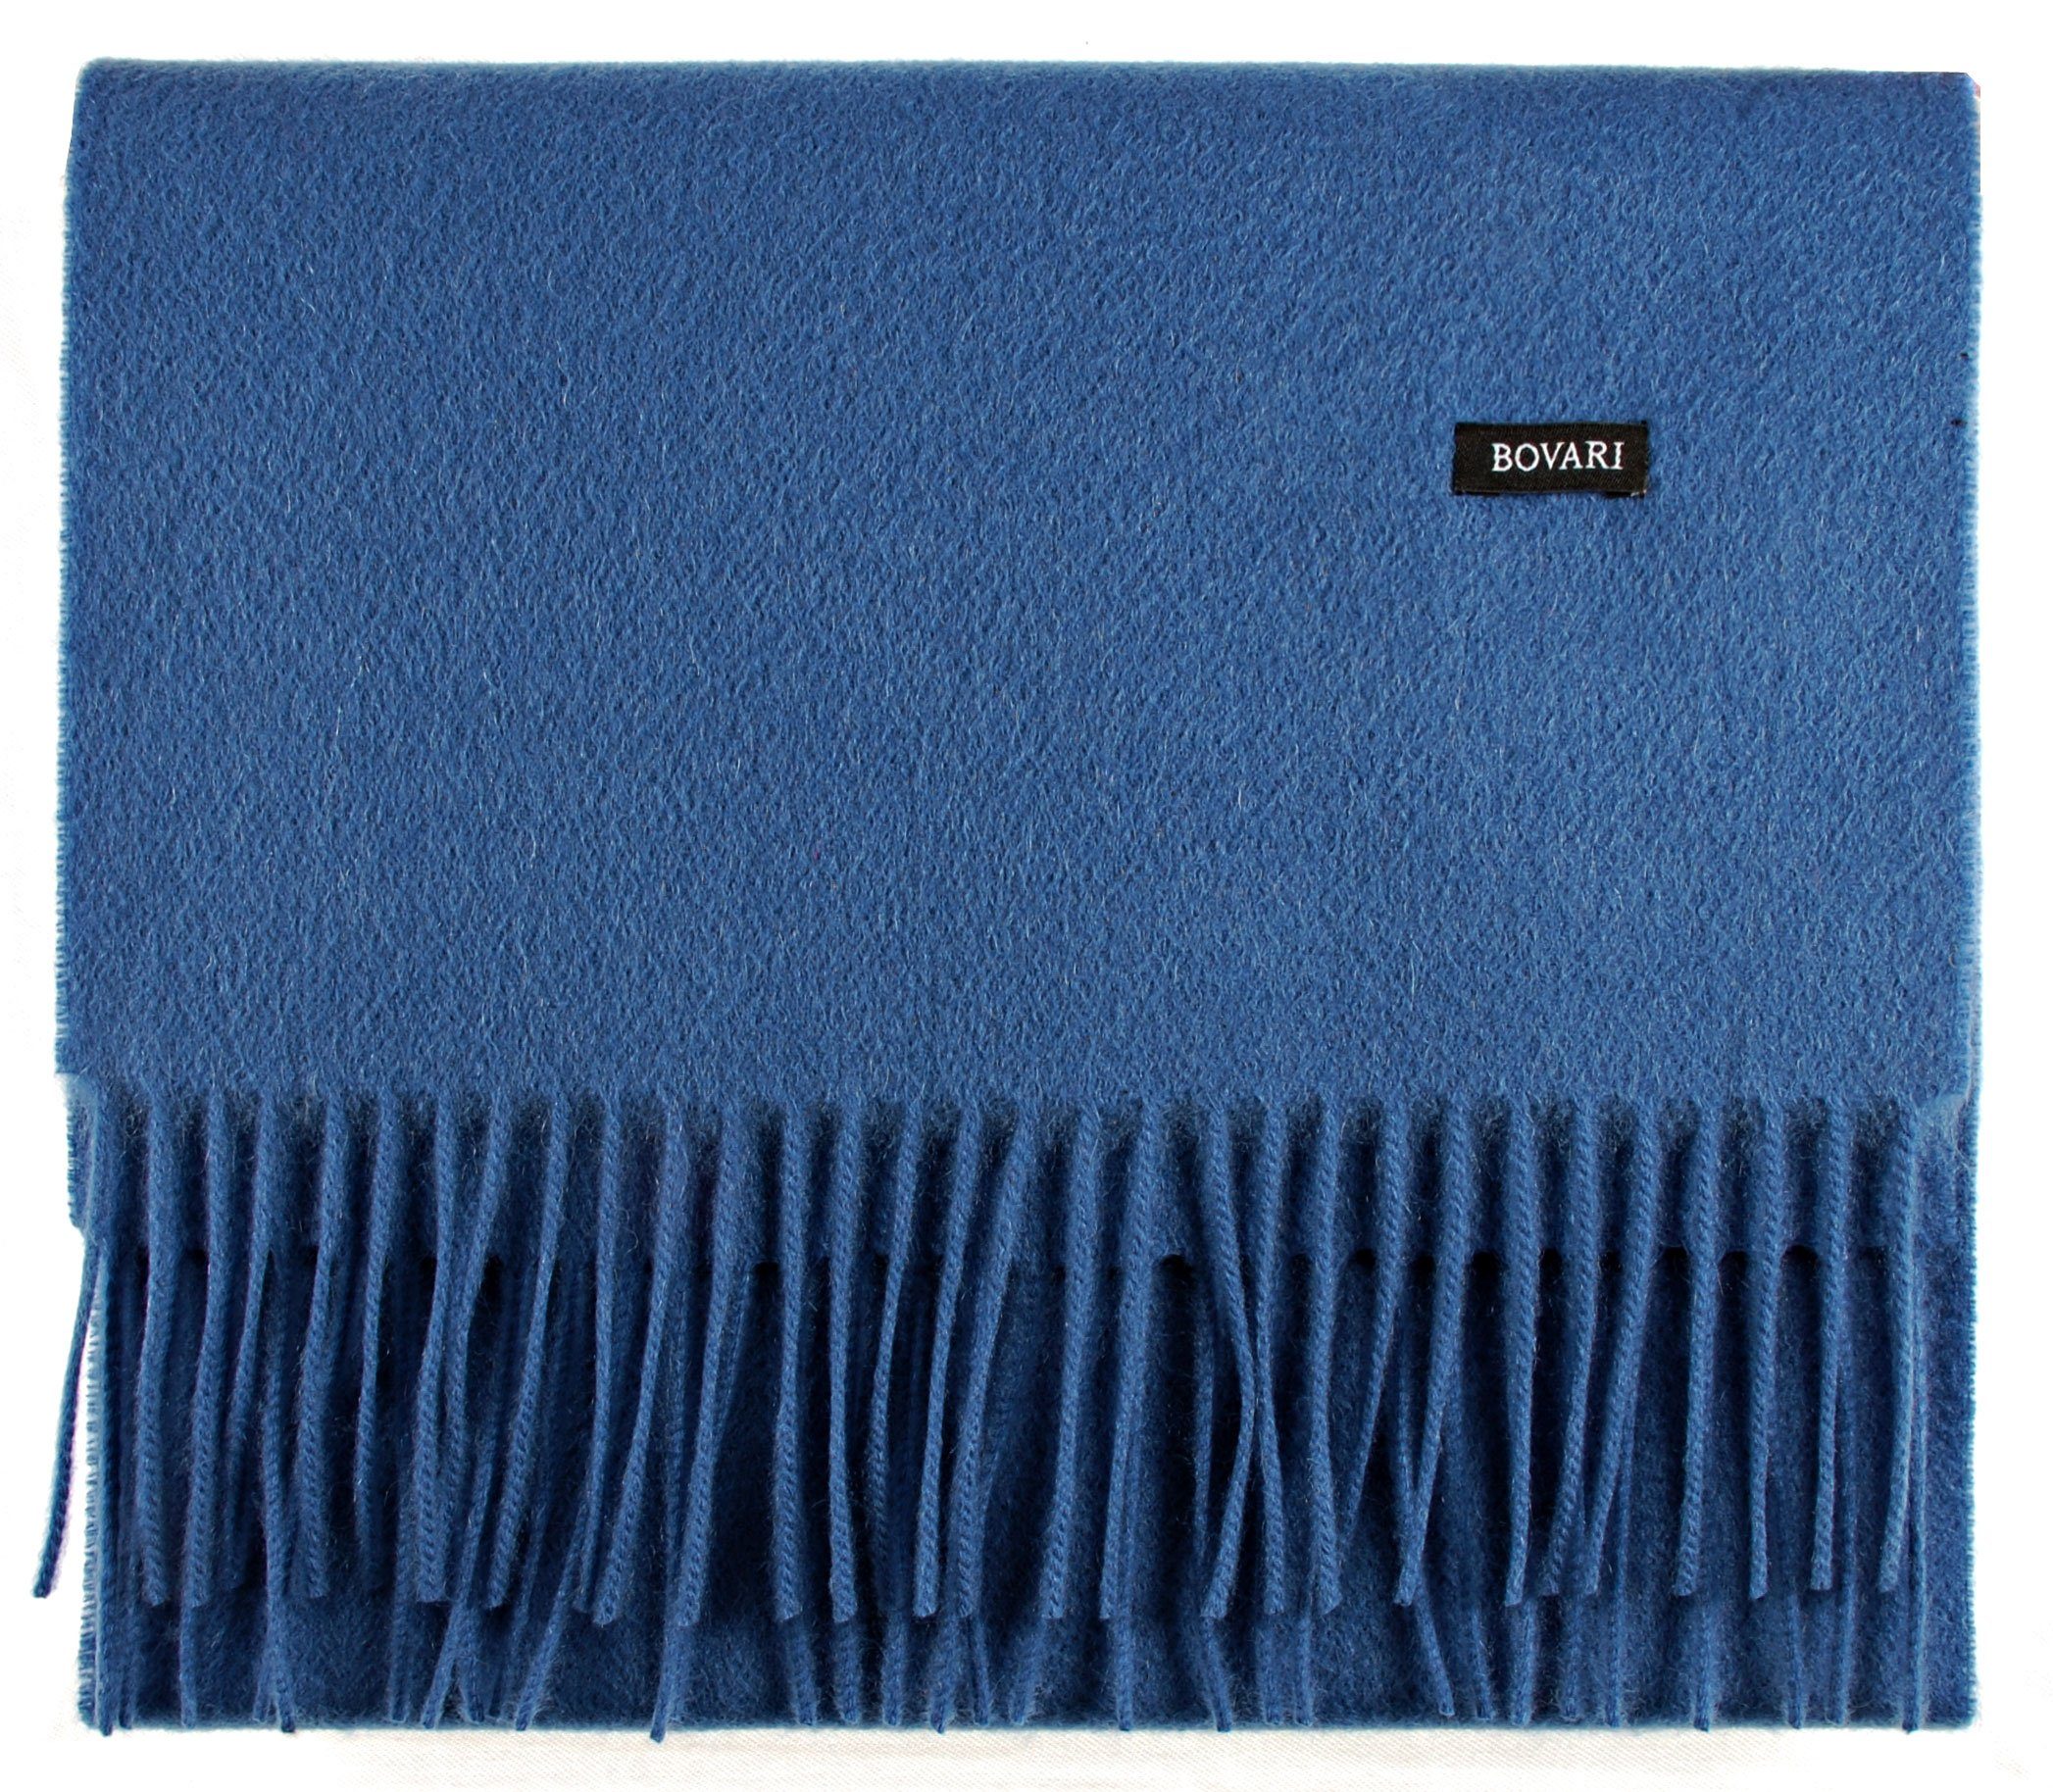 x / Kaschmirschal Schal blue 100% Bovari cm 31 classic Premium Kaschmir – blau 180 Kaschmir/Cashmere Qualität, Damen –